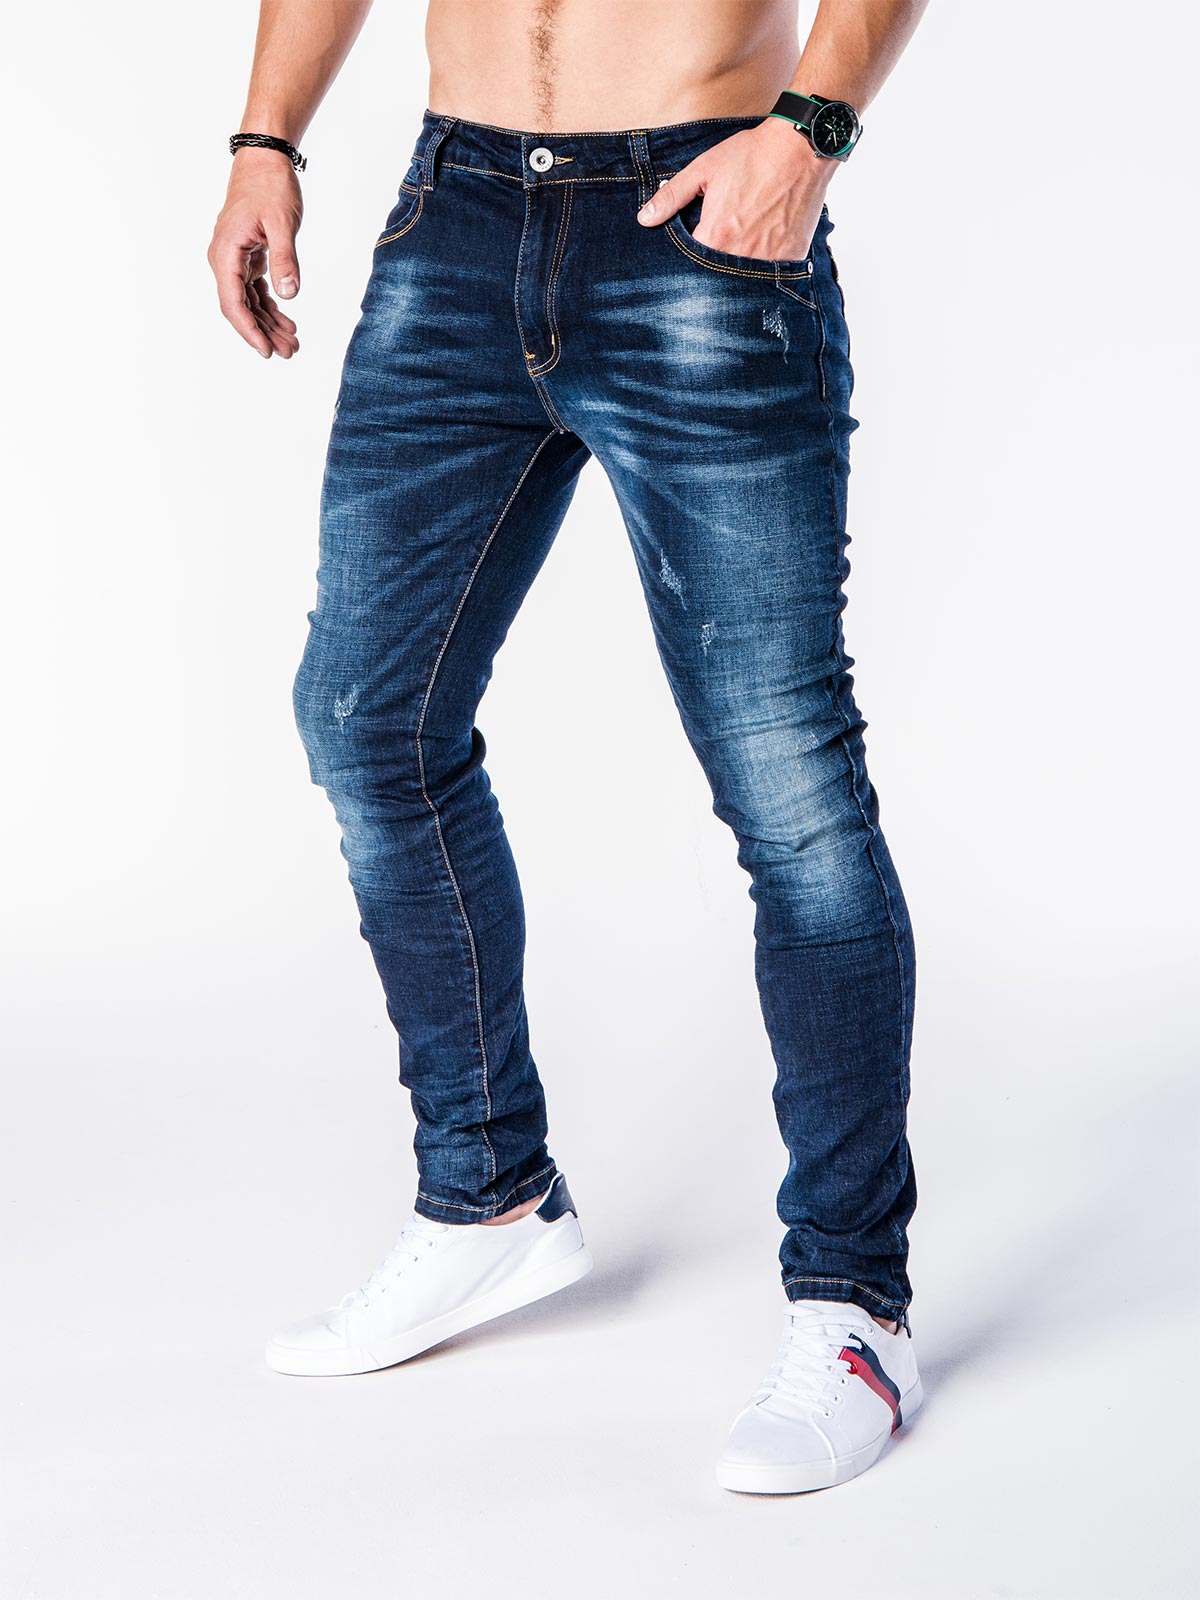 Узкие джинсы для мужчин